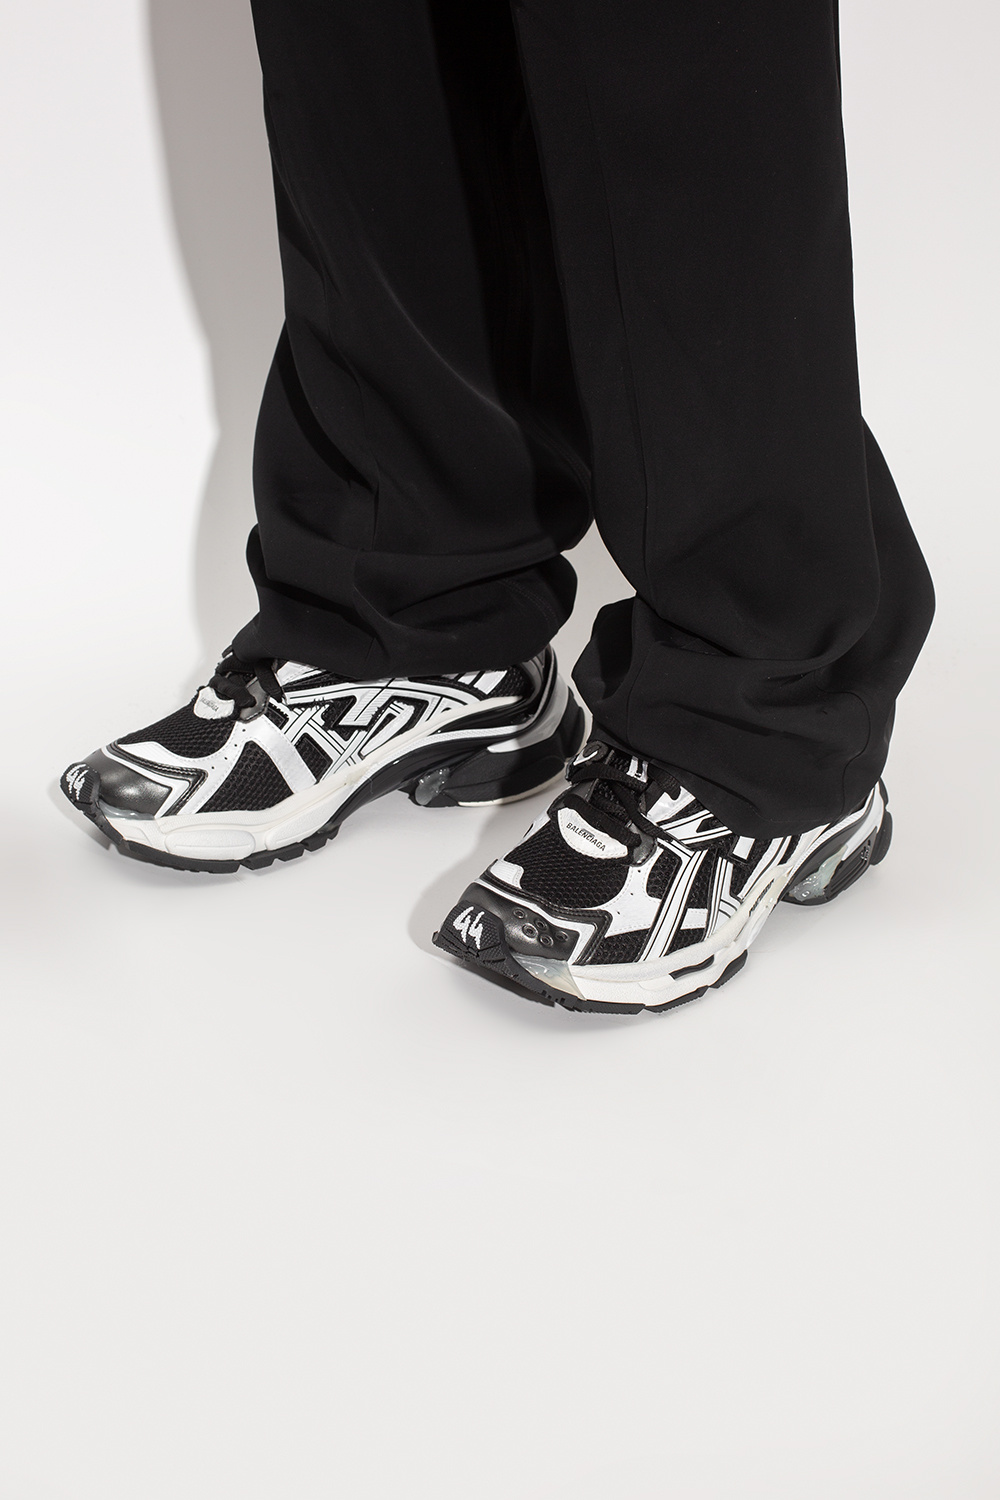 White 'Runner' sneakers Balenciaga - Vitkac Canada